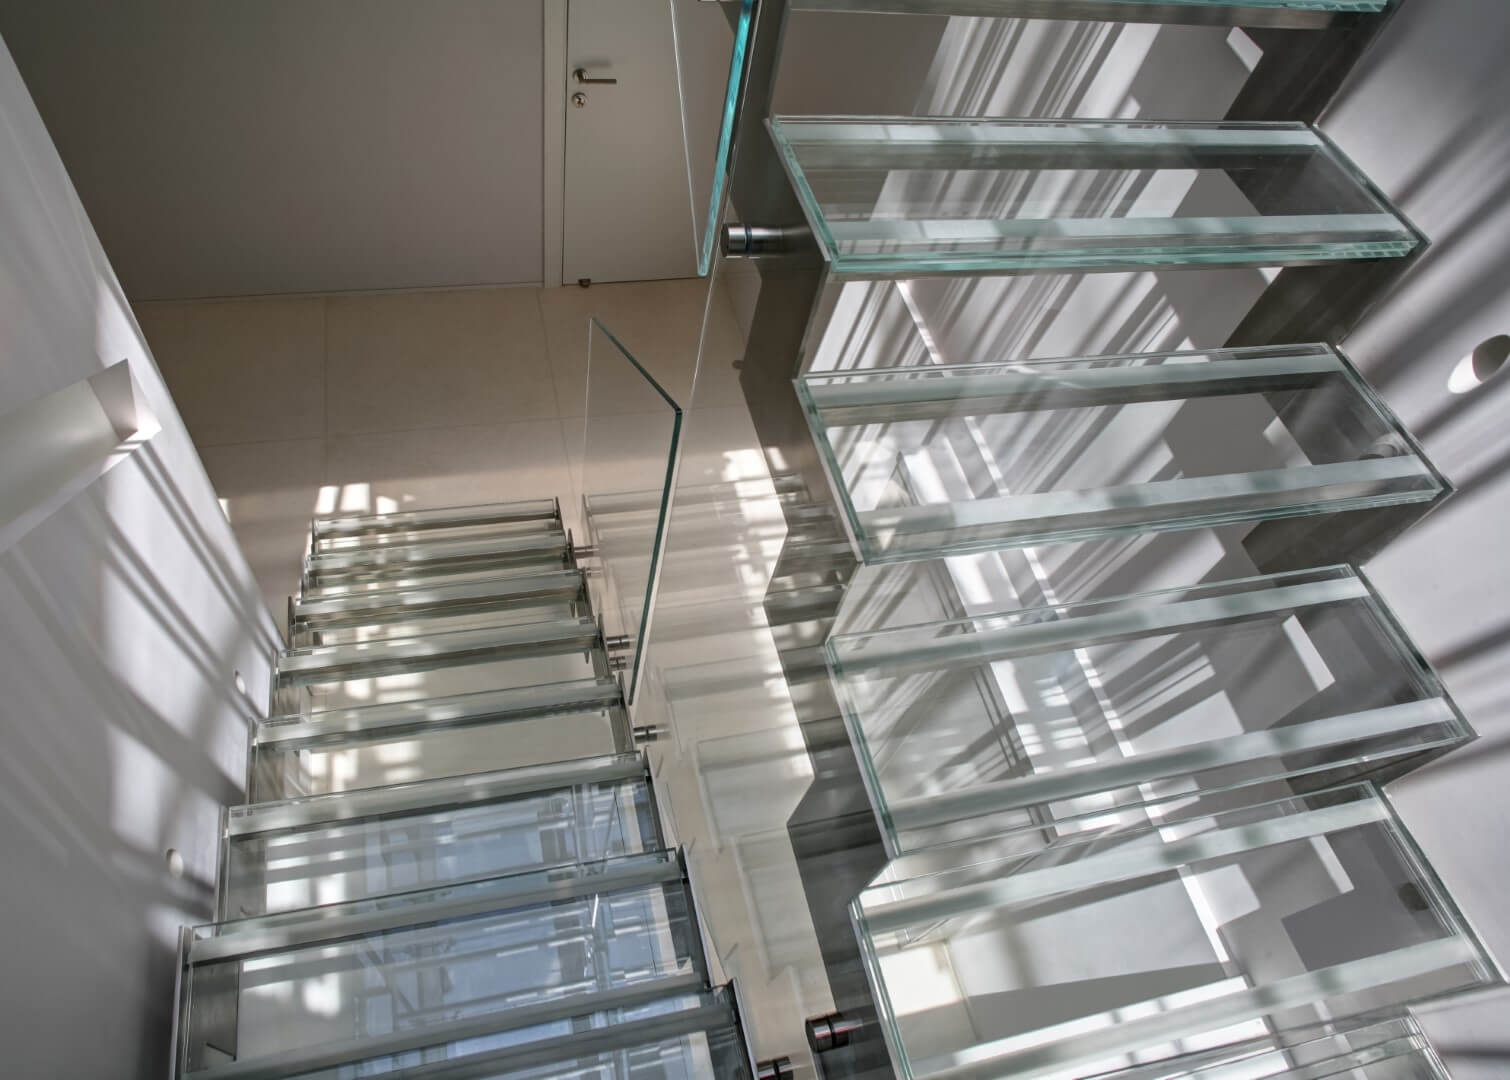 מדרגות זכוכית על קונסטרוקציות נירוסטה עם מעקה זכוכית אקסטרה קליר ומאחזי נירוסטה תלויים על הזכוכית